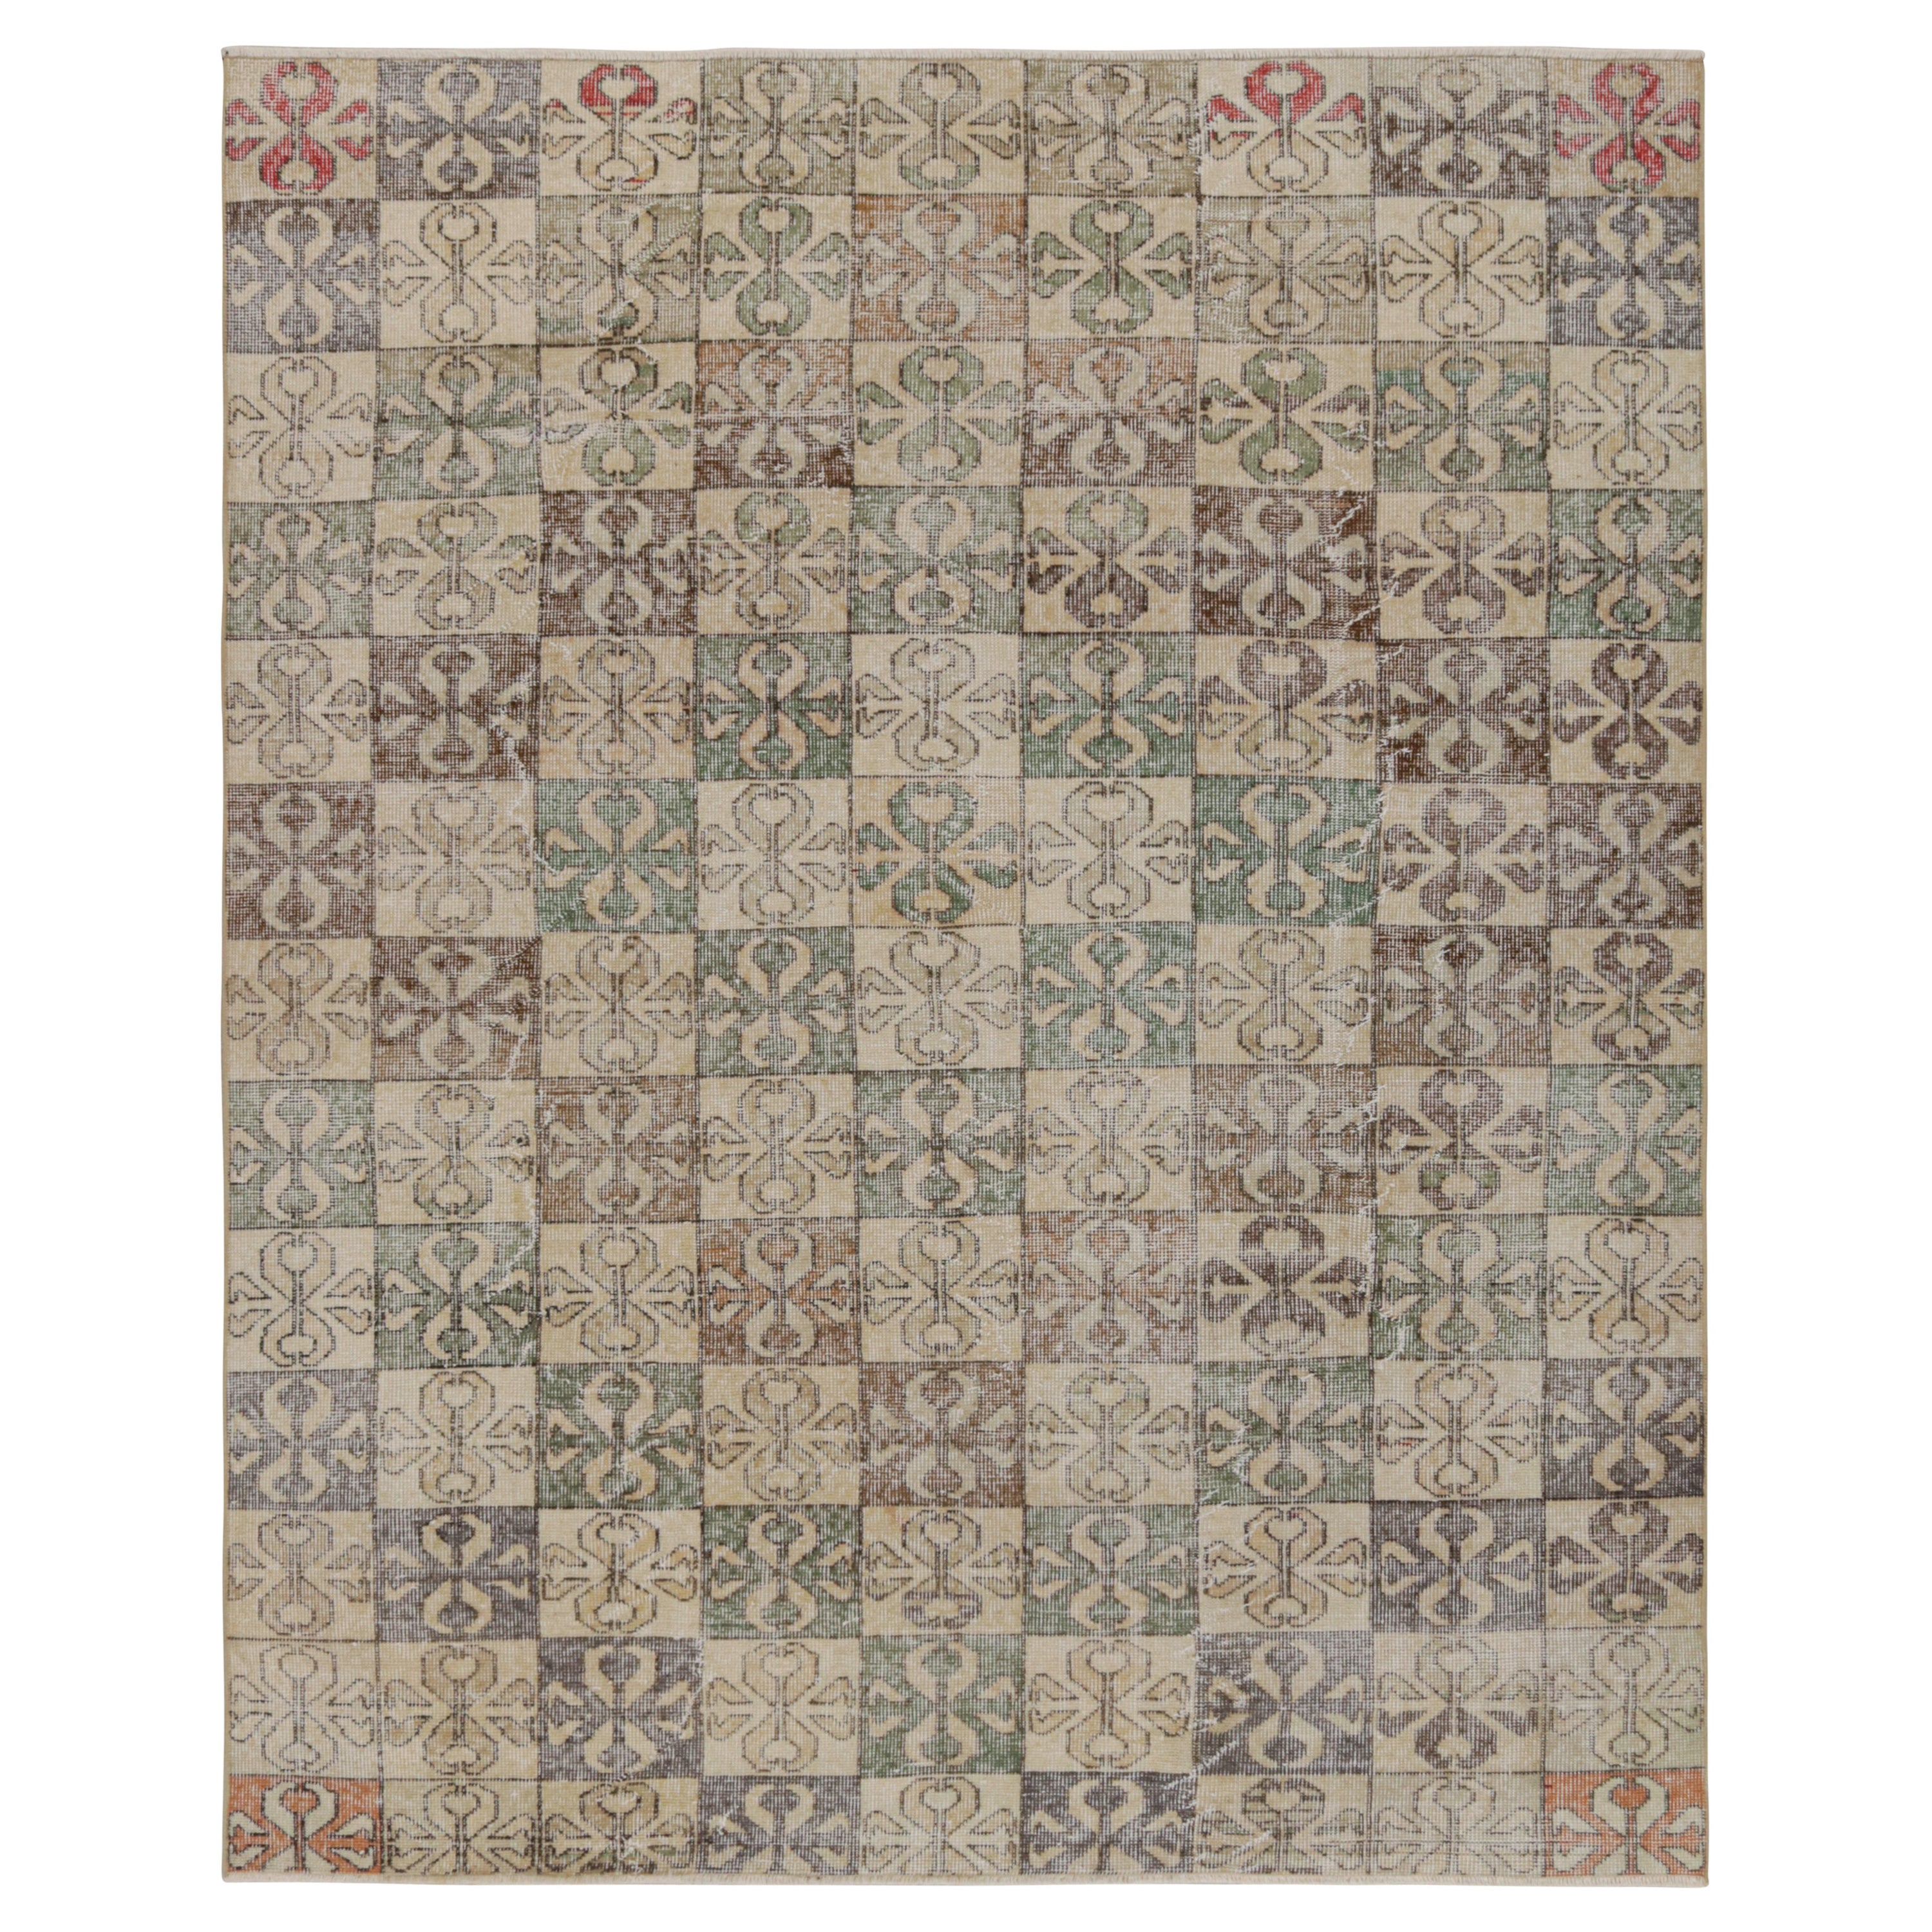 Vintage Zeki Müren Rug, with Polychromatic Geometric patterns, from Rug & Kilim